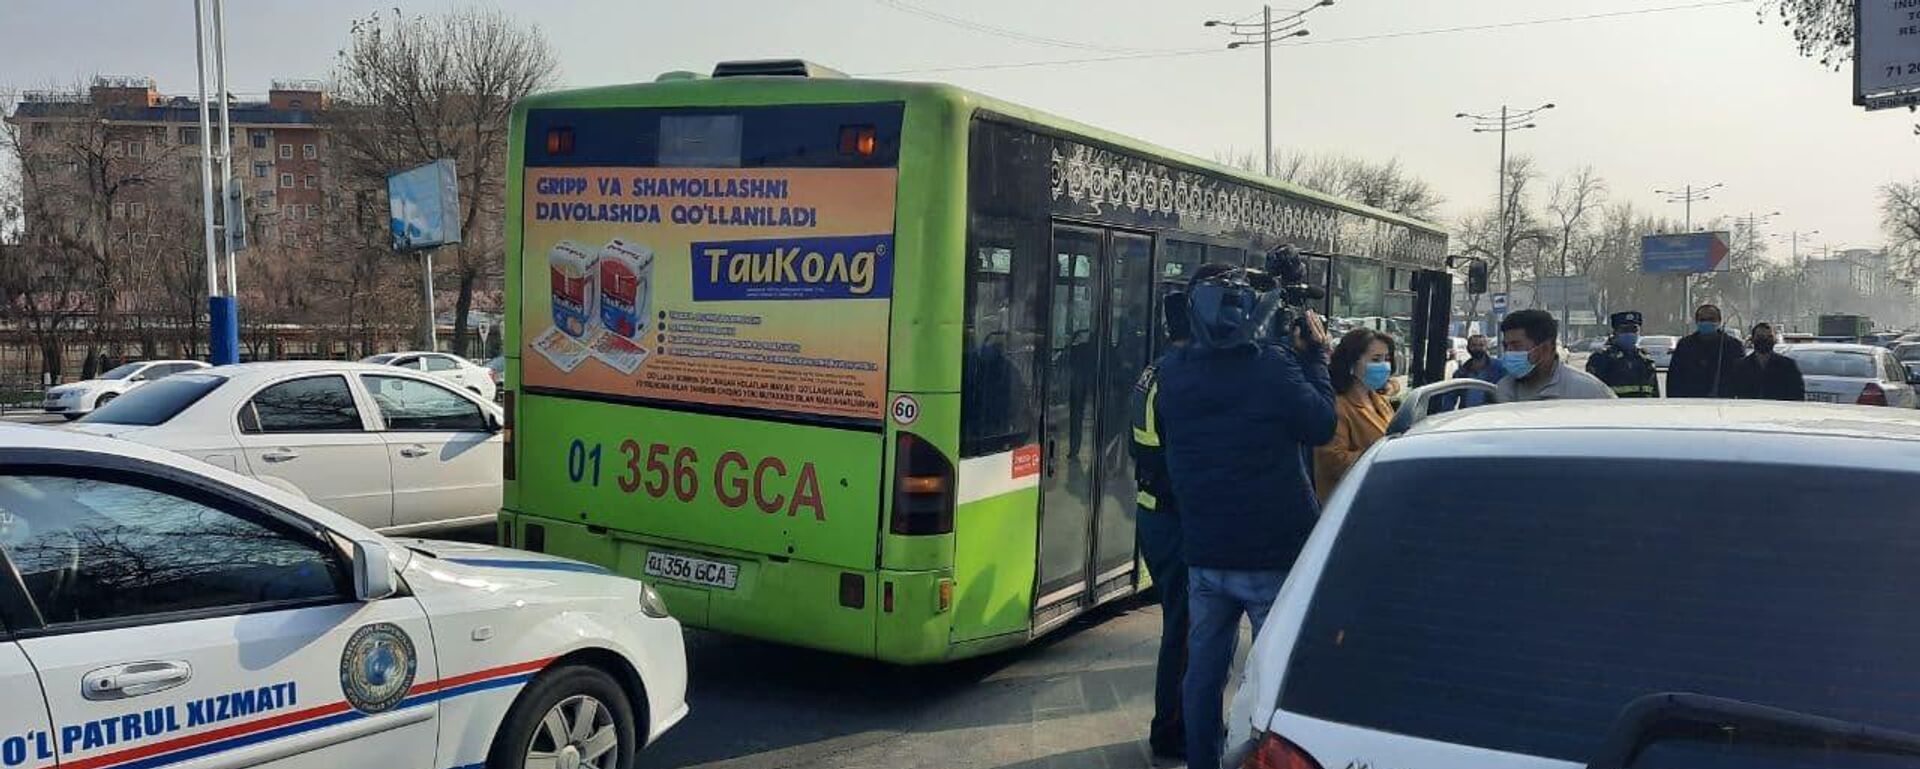 ДТП в Ташкенте с участием пассажирского автобуса - Sputnik Узбекистан, 1920, 18.03.2021